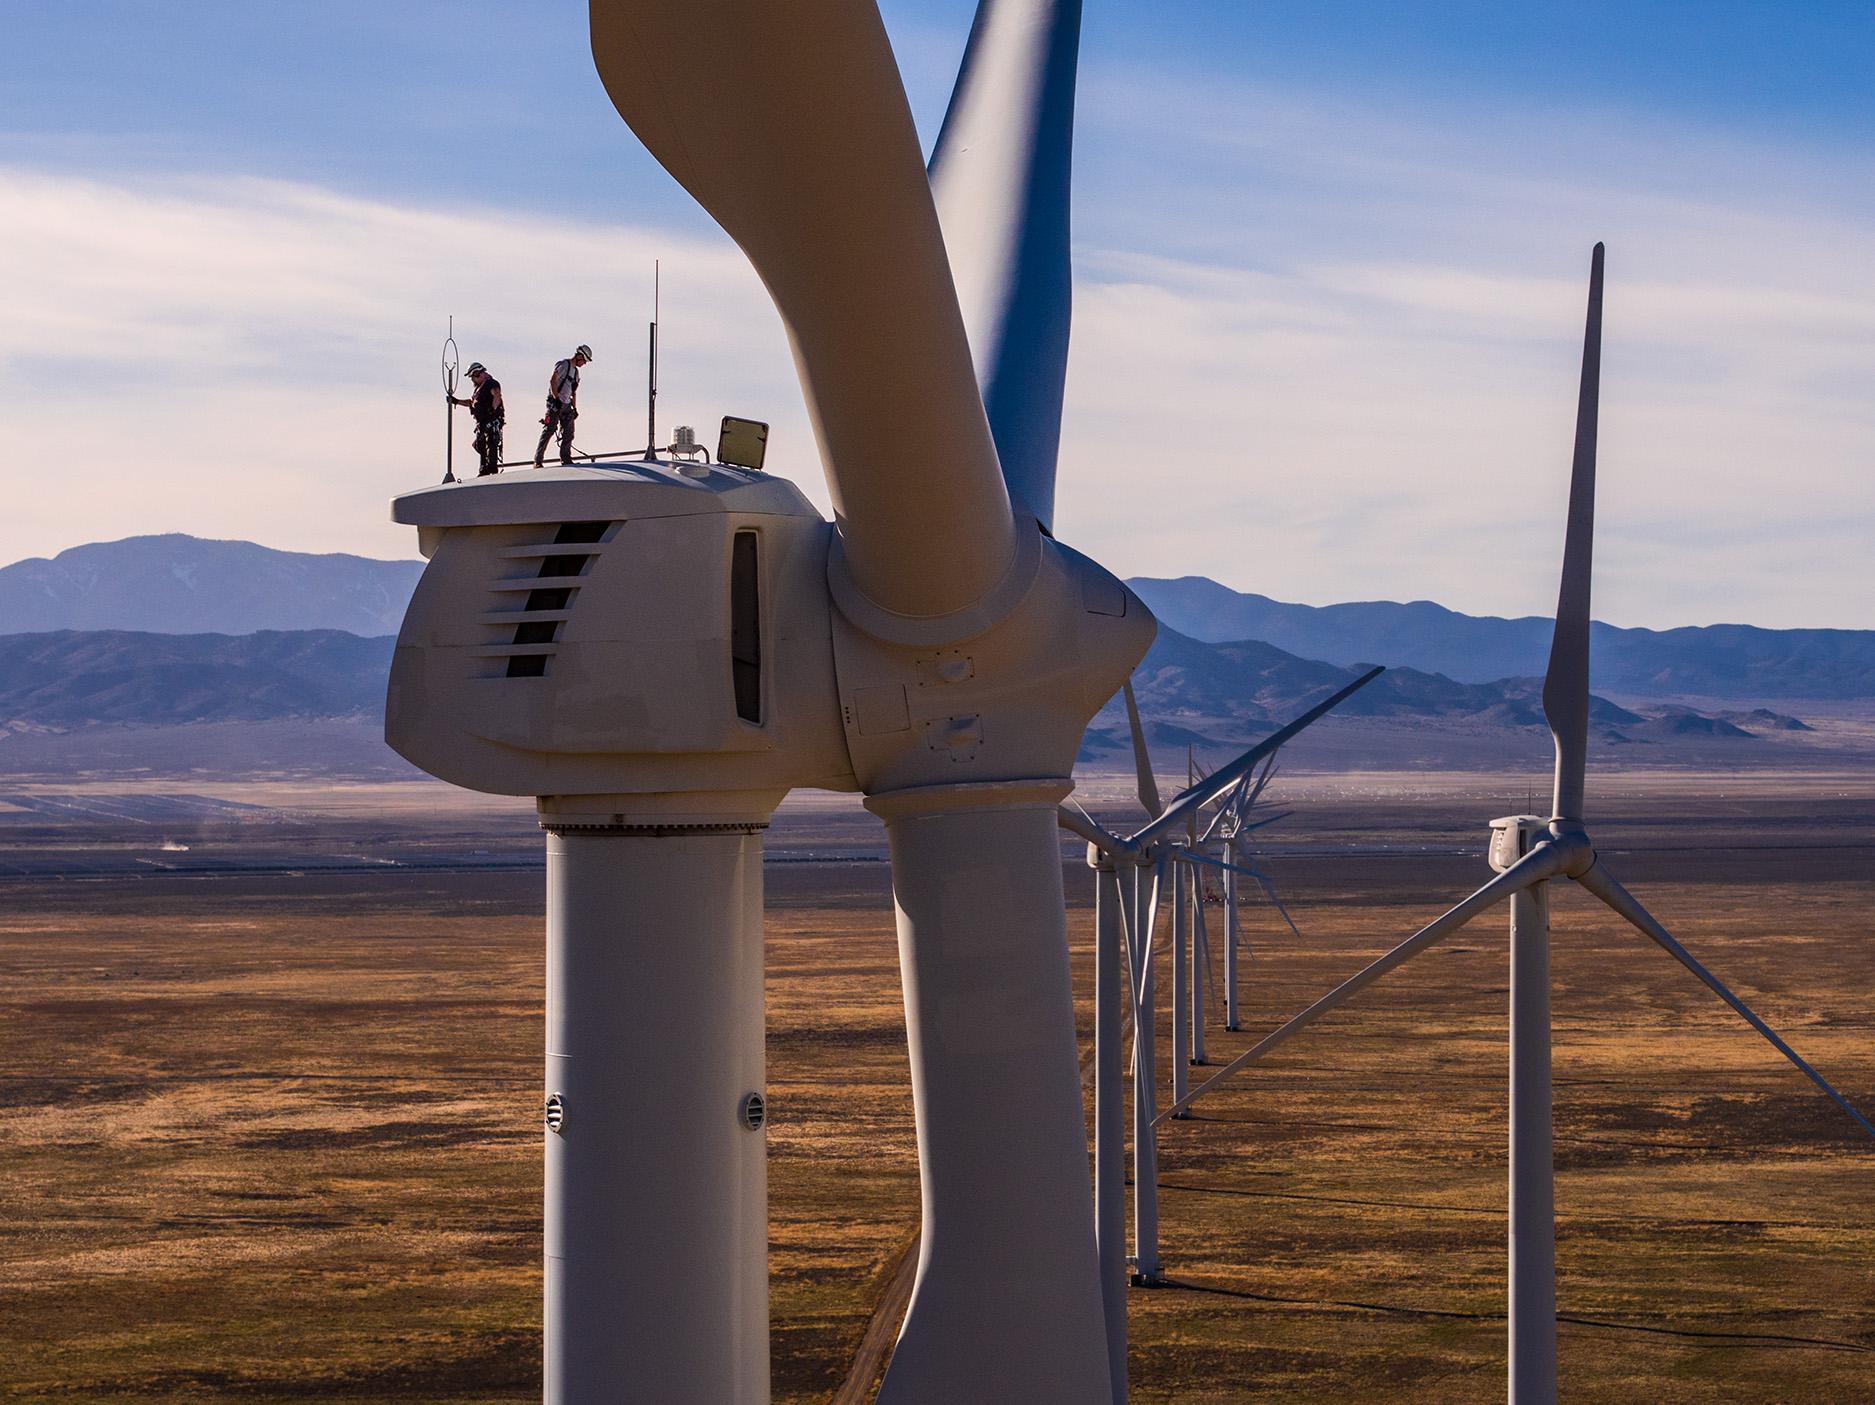 Wind tower workers on top, Milford Utah